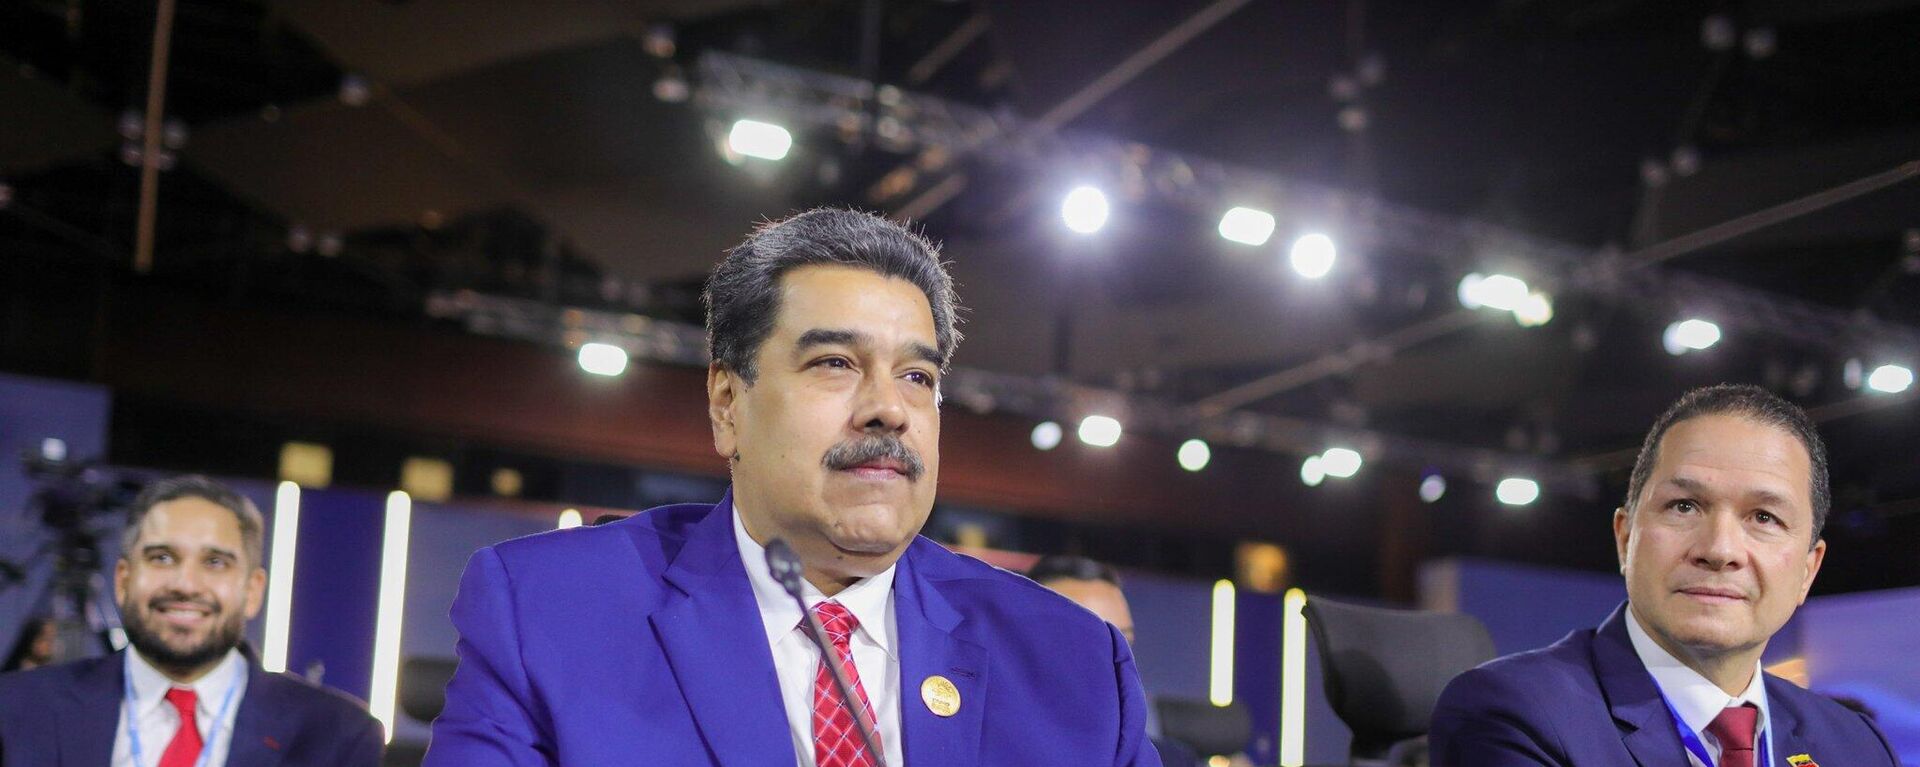 Nicolás Maduro, presidente de Venezuela, en la Conferencia de las Naciones Unidas sobre el Cambio Climático (COP27) - Sputnik Mundo, 1920, 01.01.2023